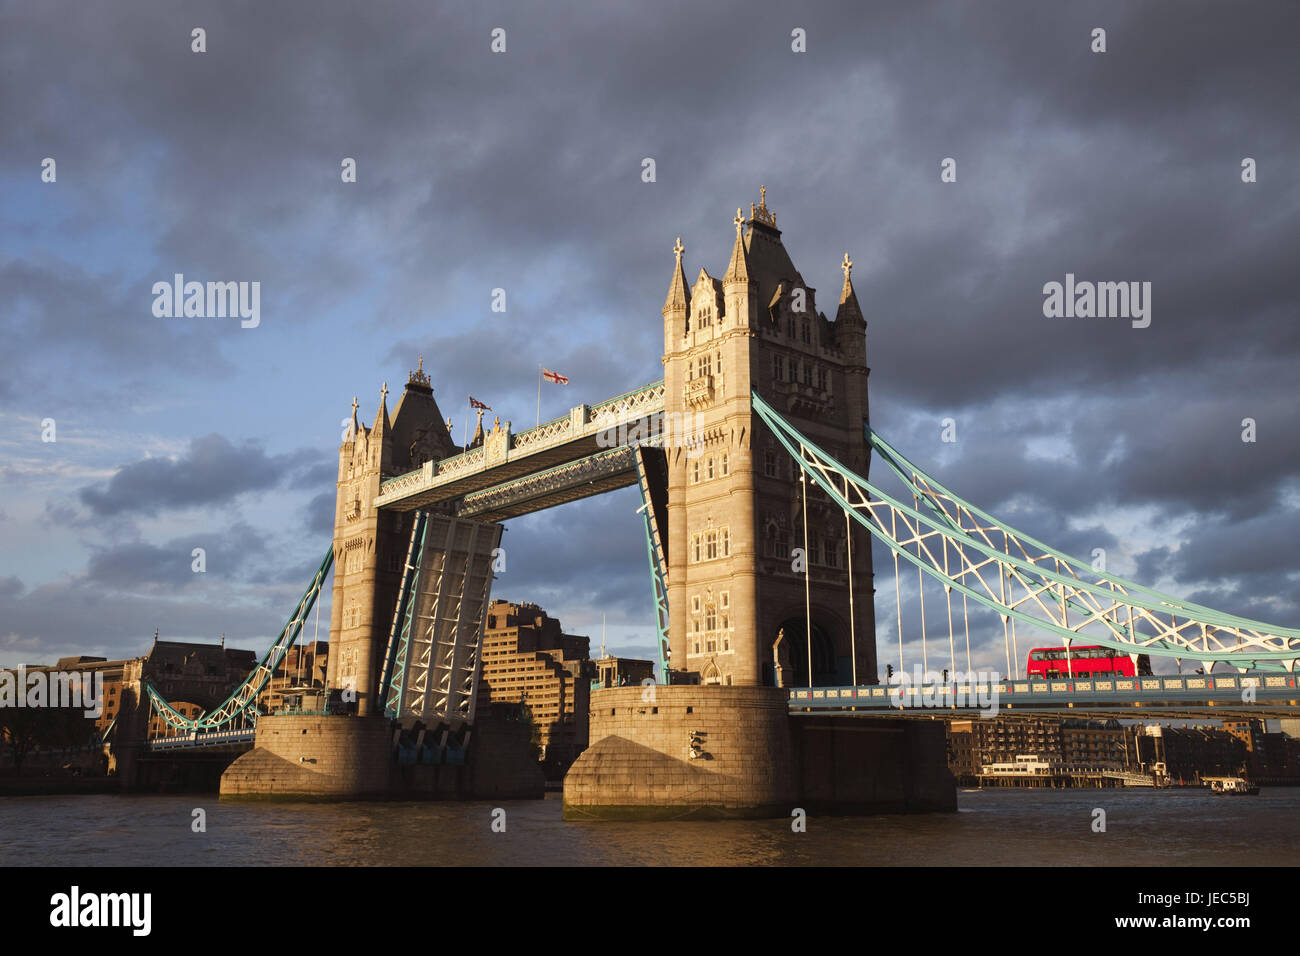 England, London, Tower Bridge, eröffnet, die Themse, am Abend Sonne, Stadt, Architektur, Struktur, Sehenswürdigkeit, Denkmal, Brücke, Fluss, Verkehr, Illuminateds, offen, Unruhbrücke, Stockfoto